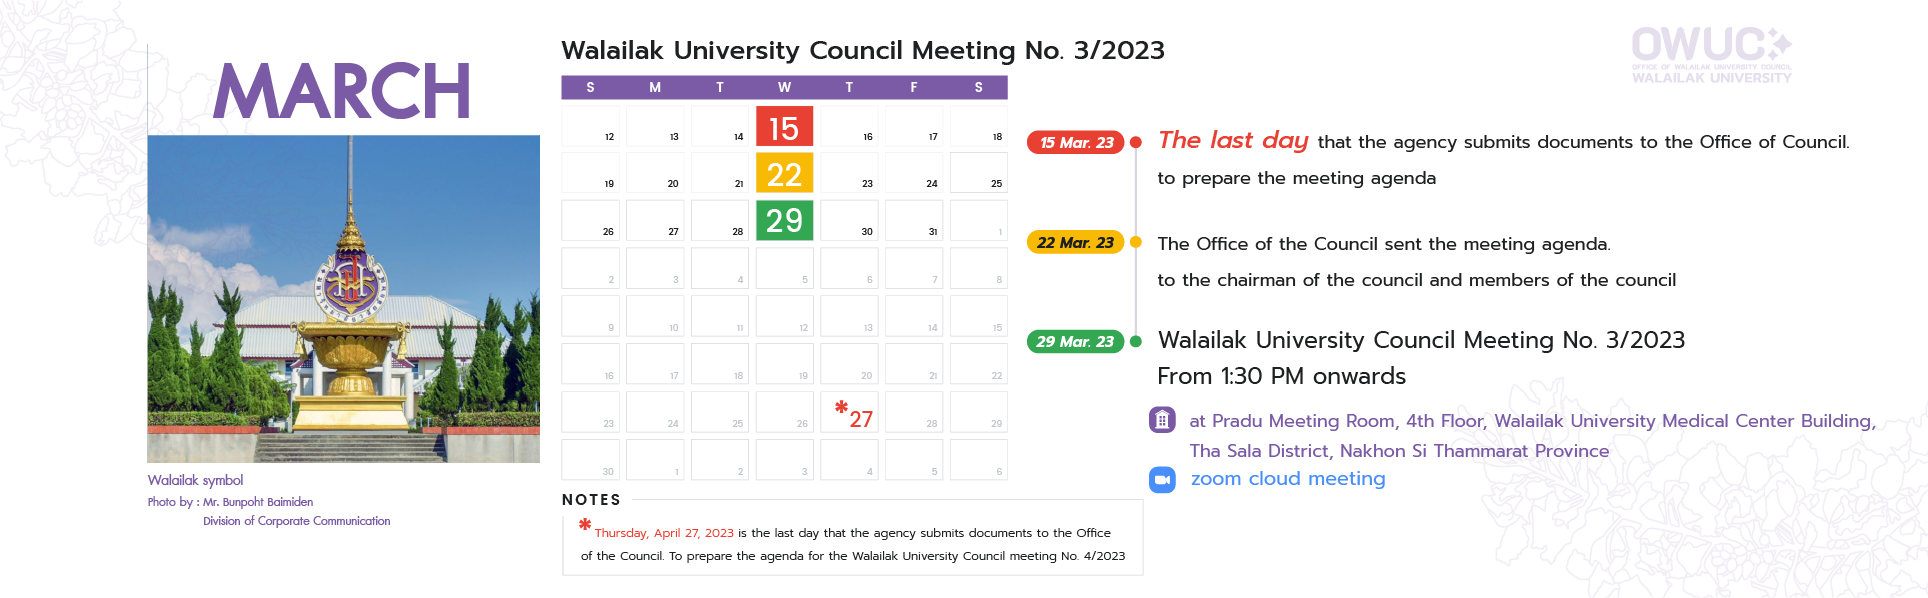 calendar meeting no. 3-2023